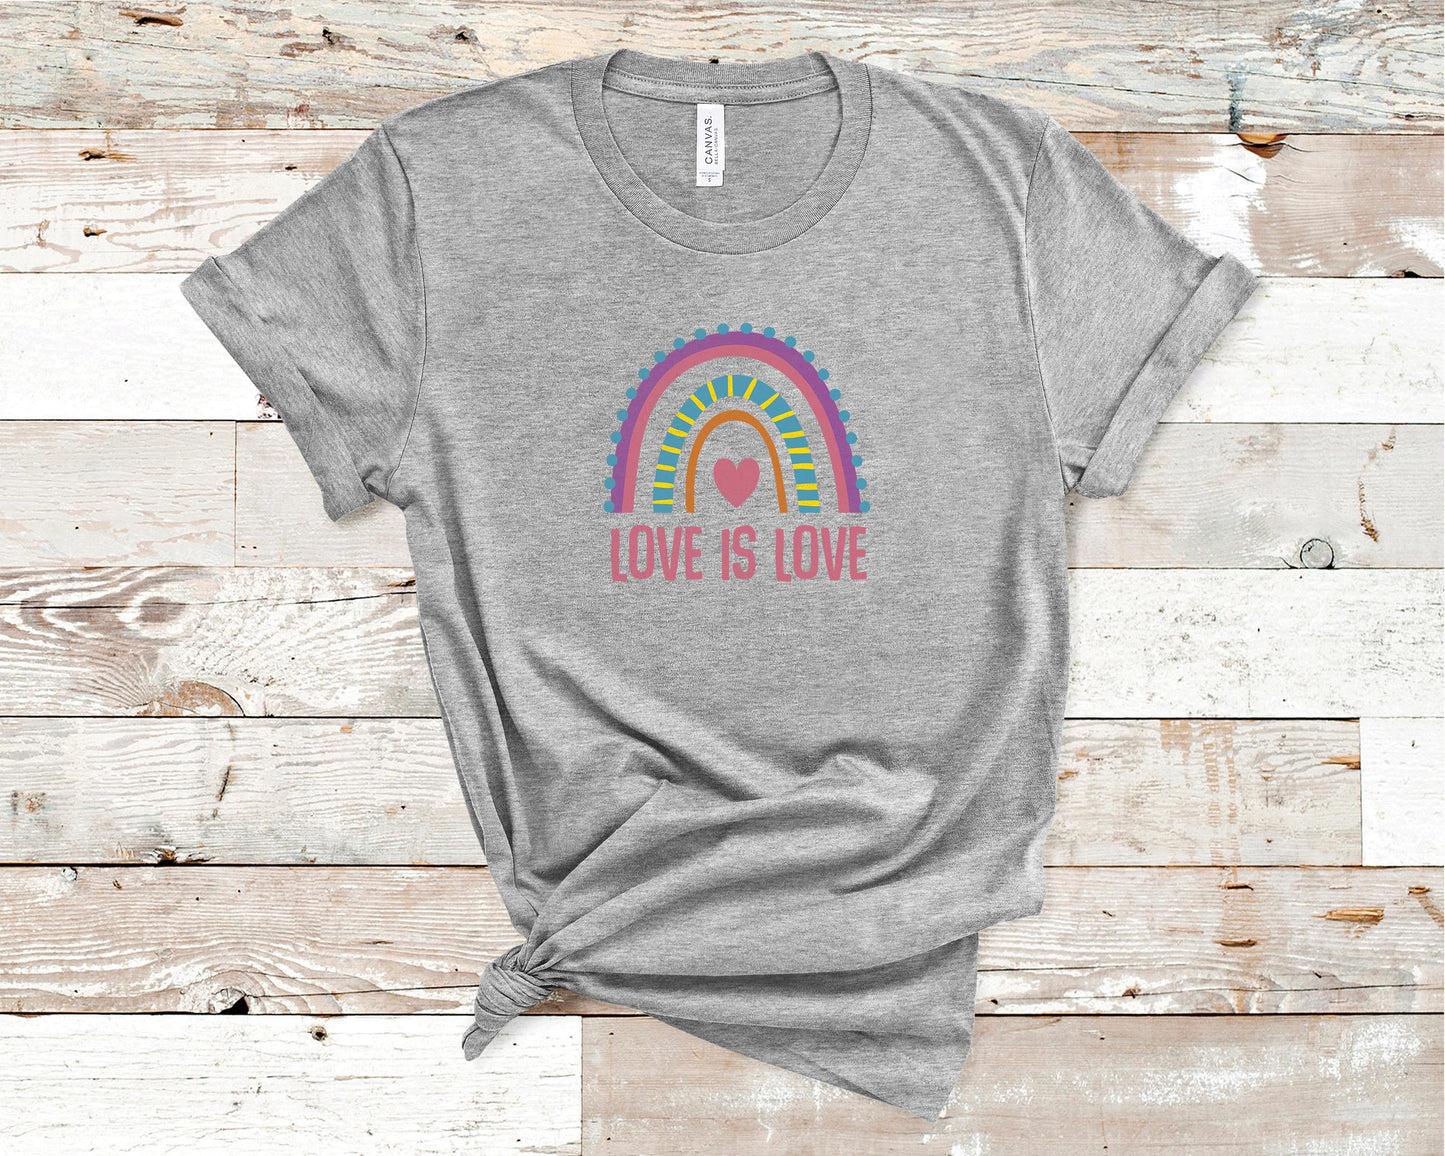 Love Is Love - LGBTQ